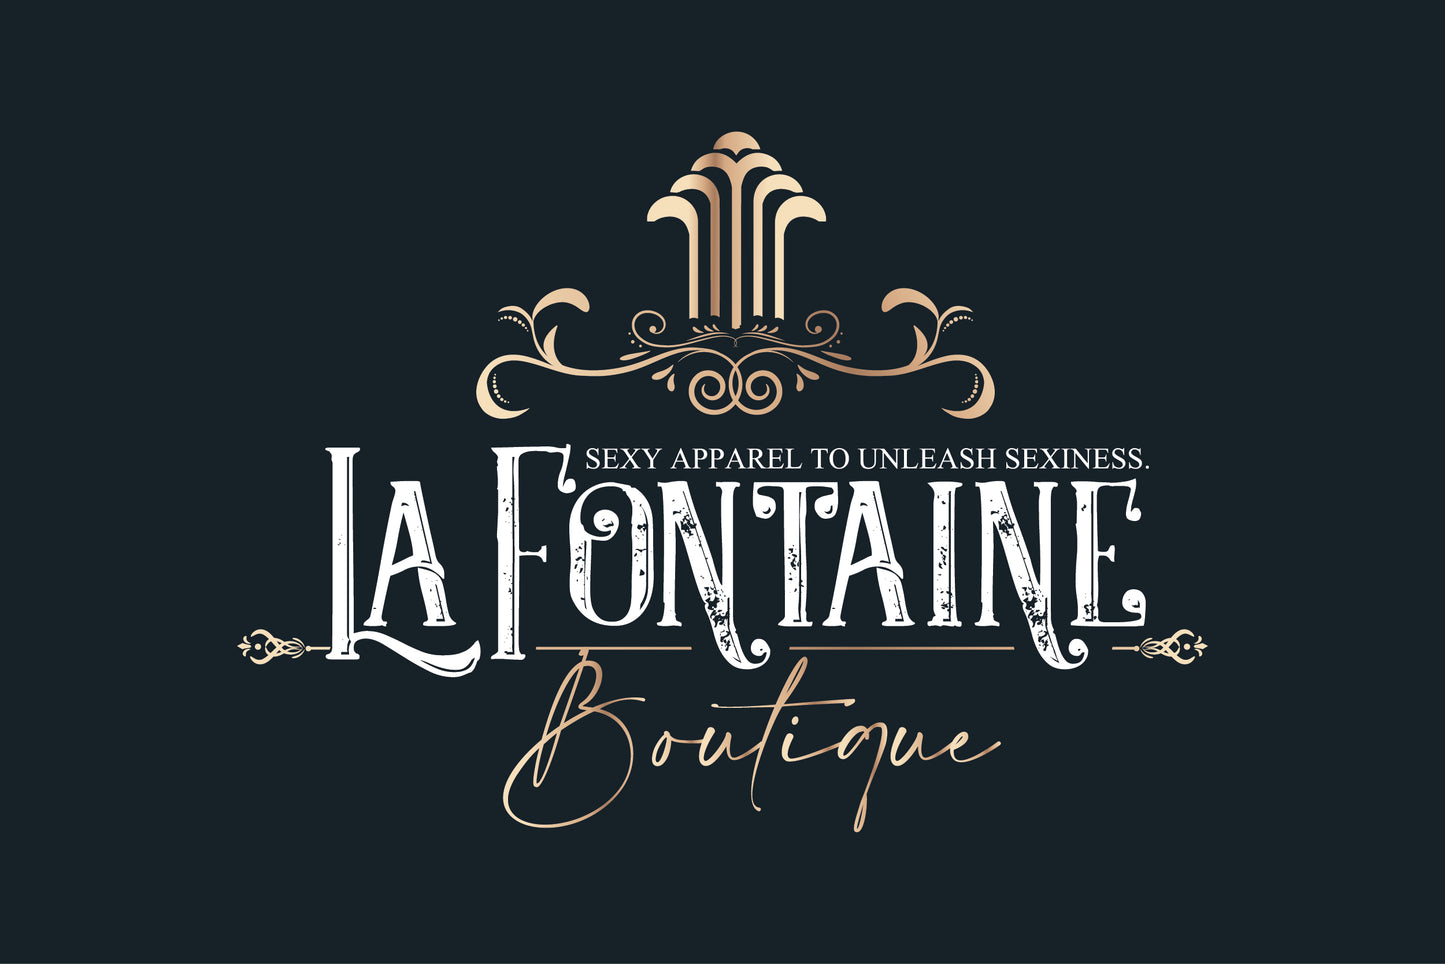 Sexy Bra – Lafontaine Boutique